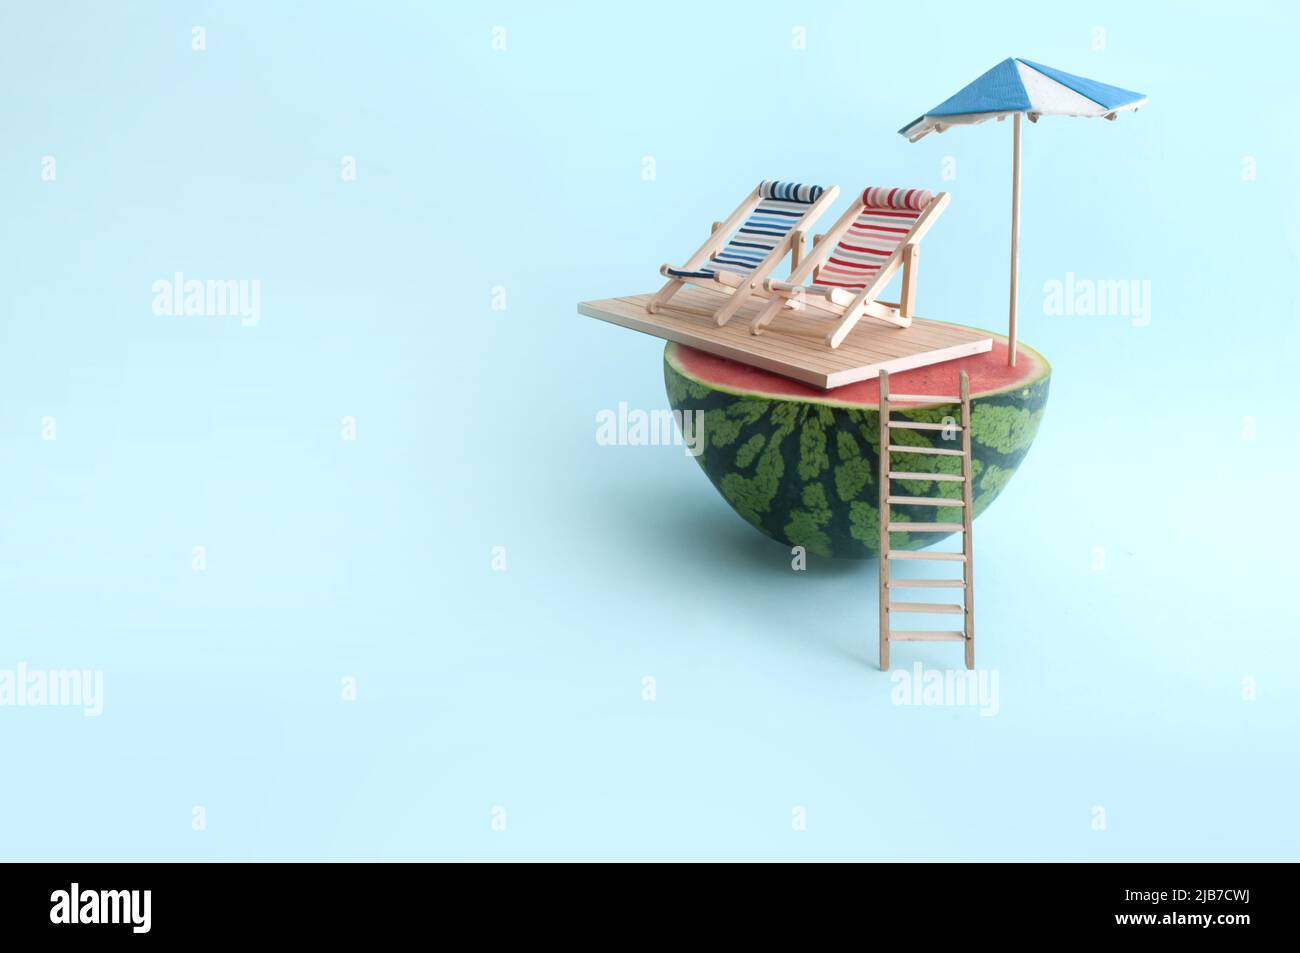 Sandía de verano con sombrilla, dos tumbonas y escalera de madera en la playa Foto de stock